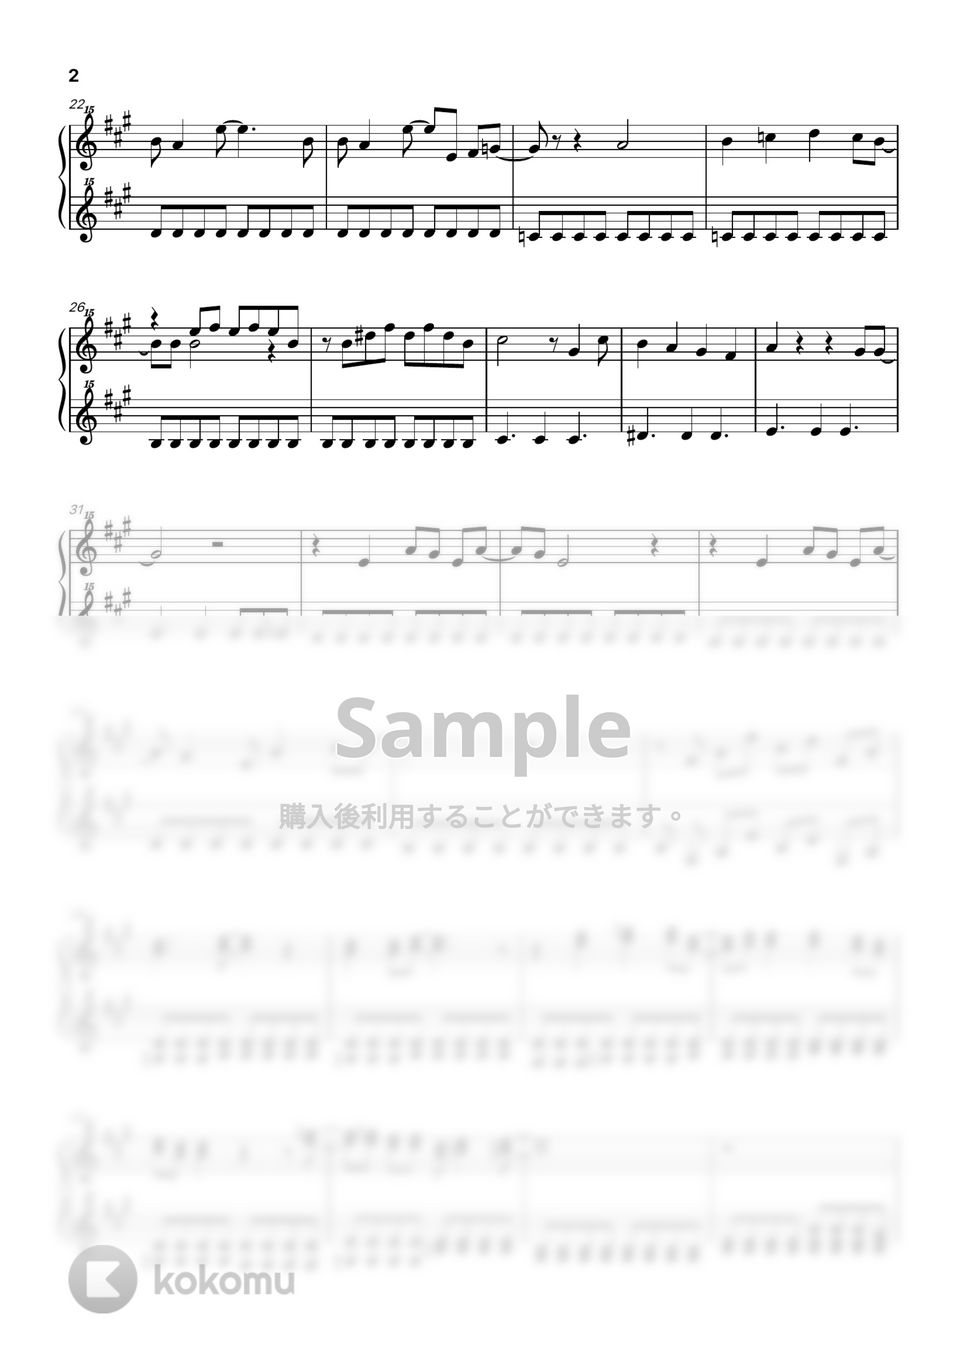 清岡 千穂 - CHA-LA HEAD-CHA-LA (トイピアノ / 32鍵盤 / ドラゴンボール) by 川西三裕